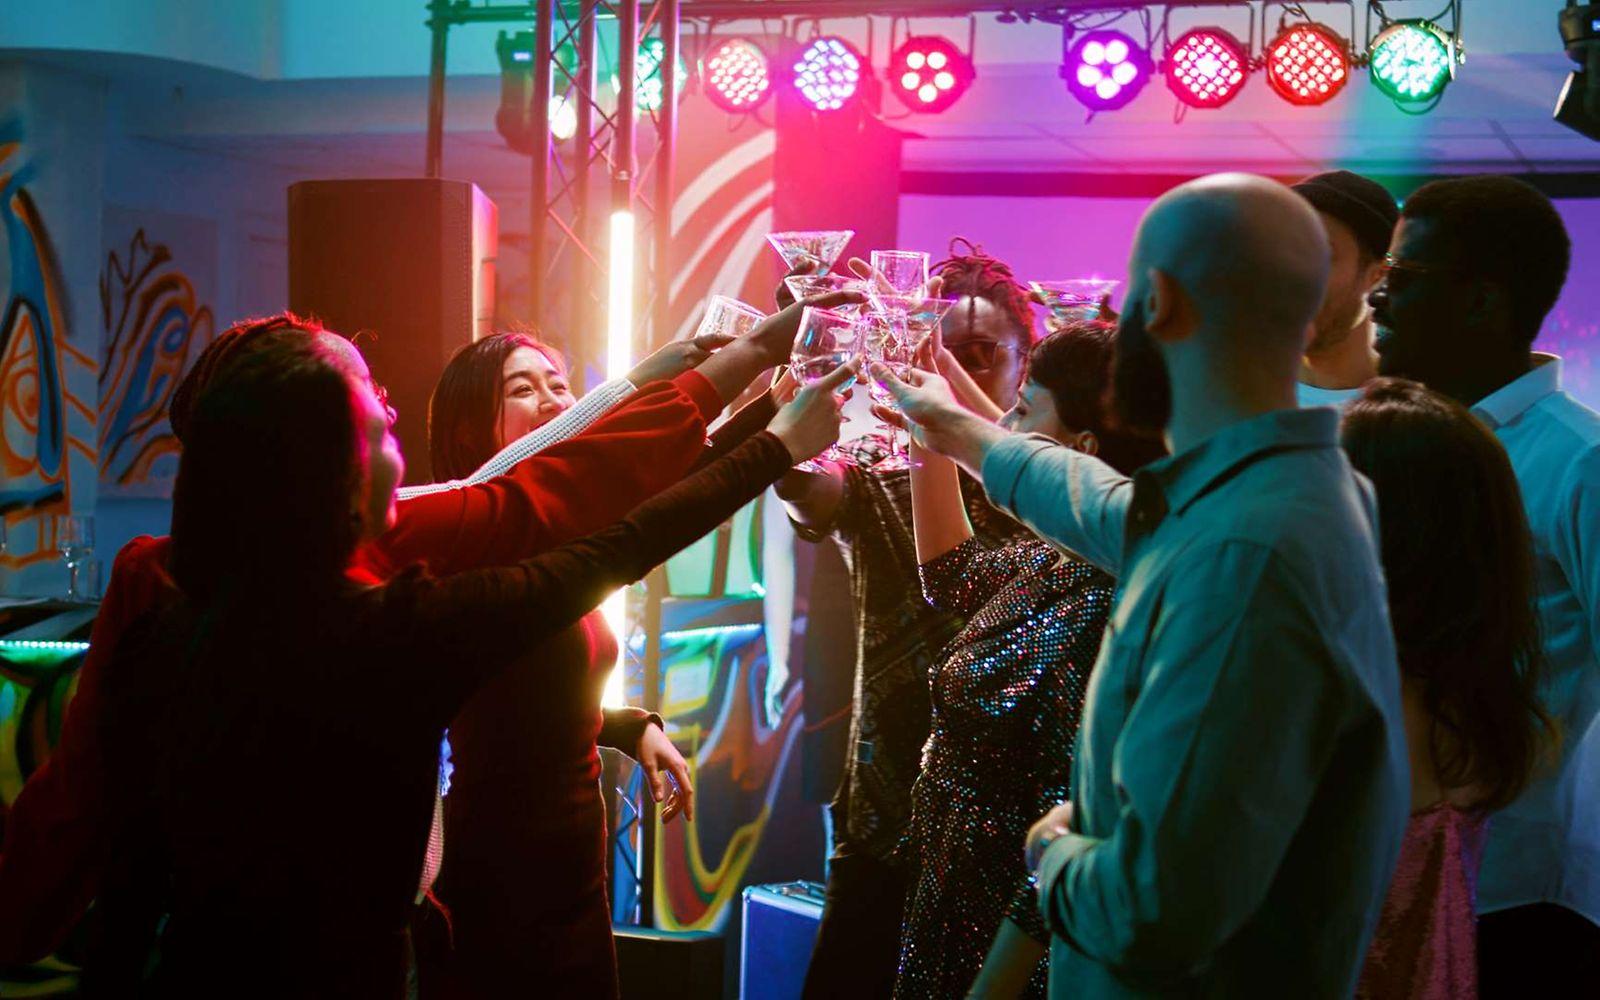 Party ohne Alkohol: Partygäste stoßen auf der Tanzfläche mit ihren alkoholfreien Drinks an.